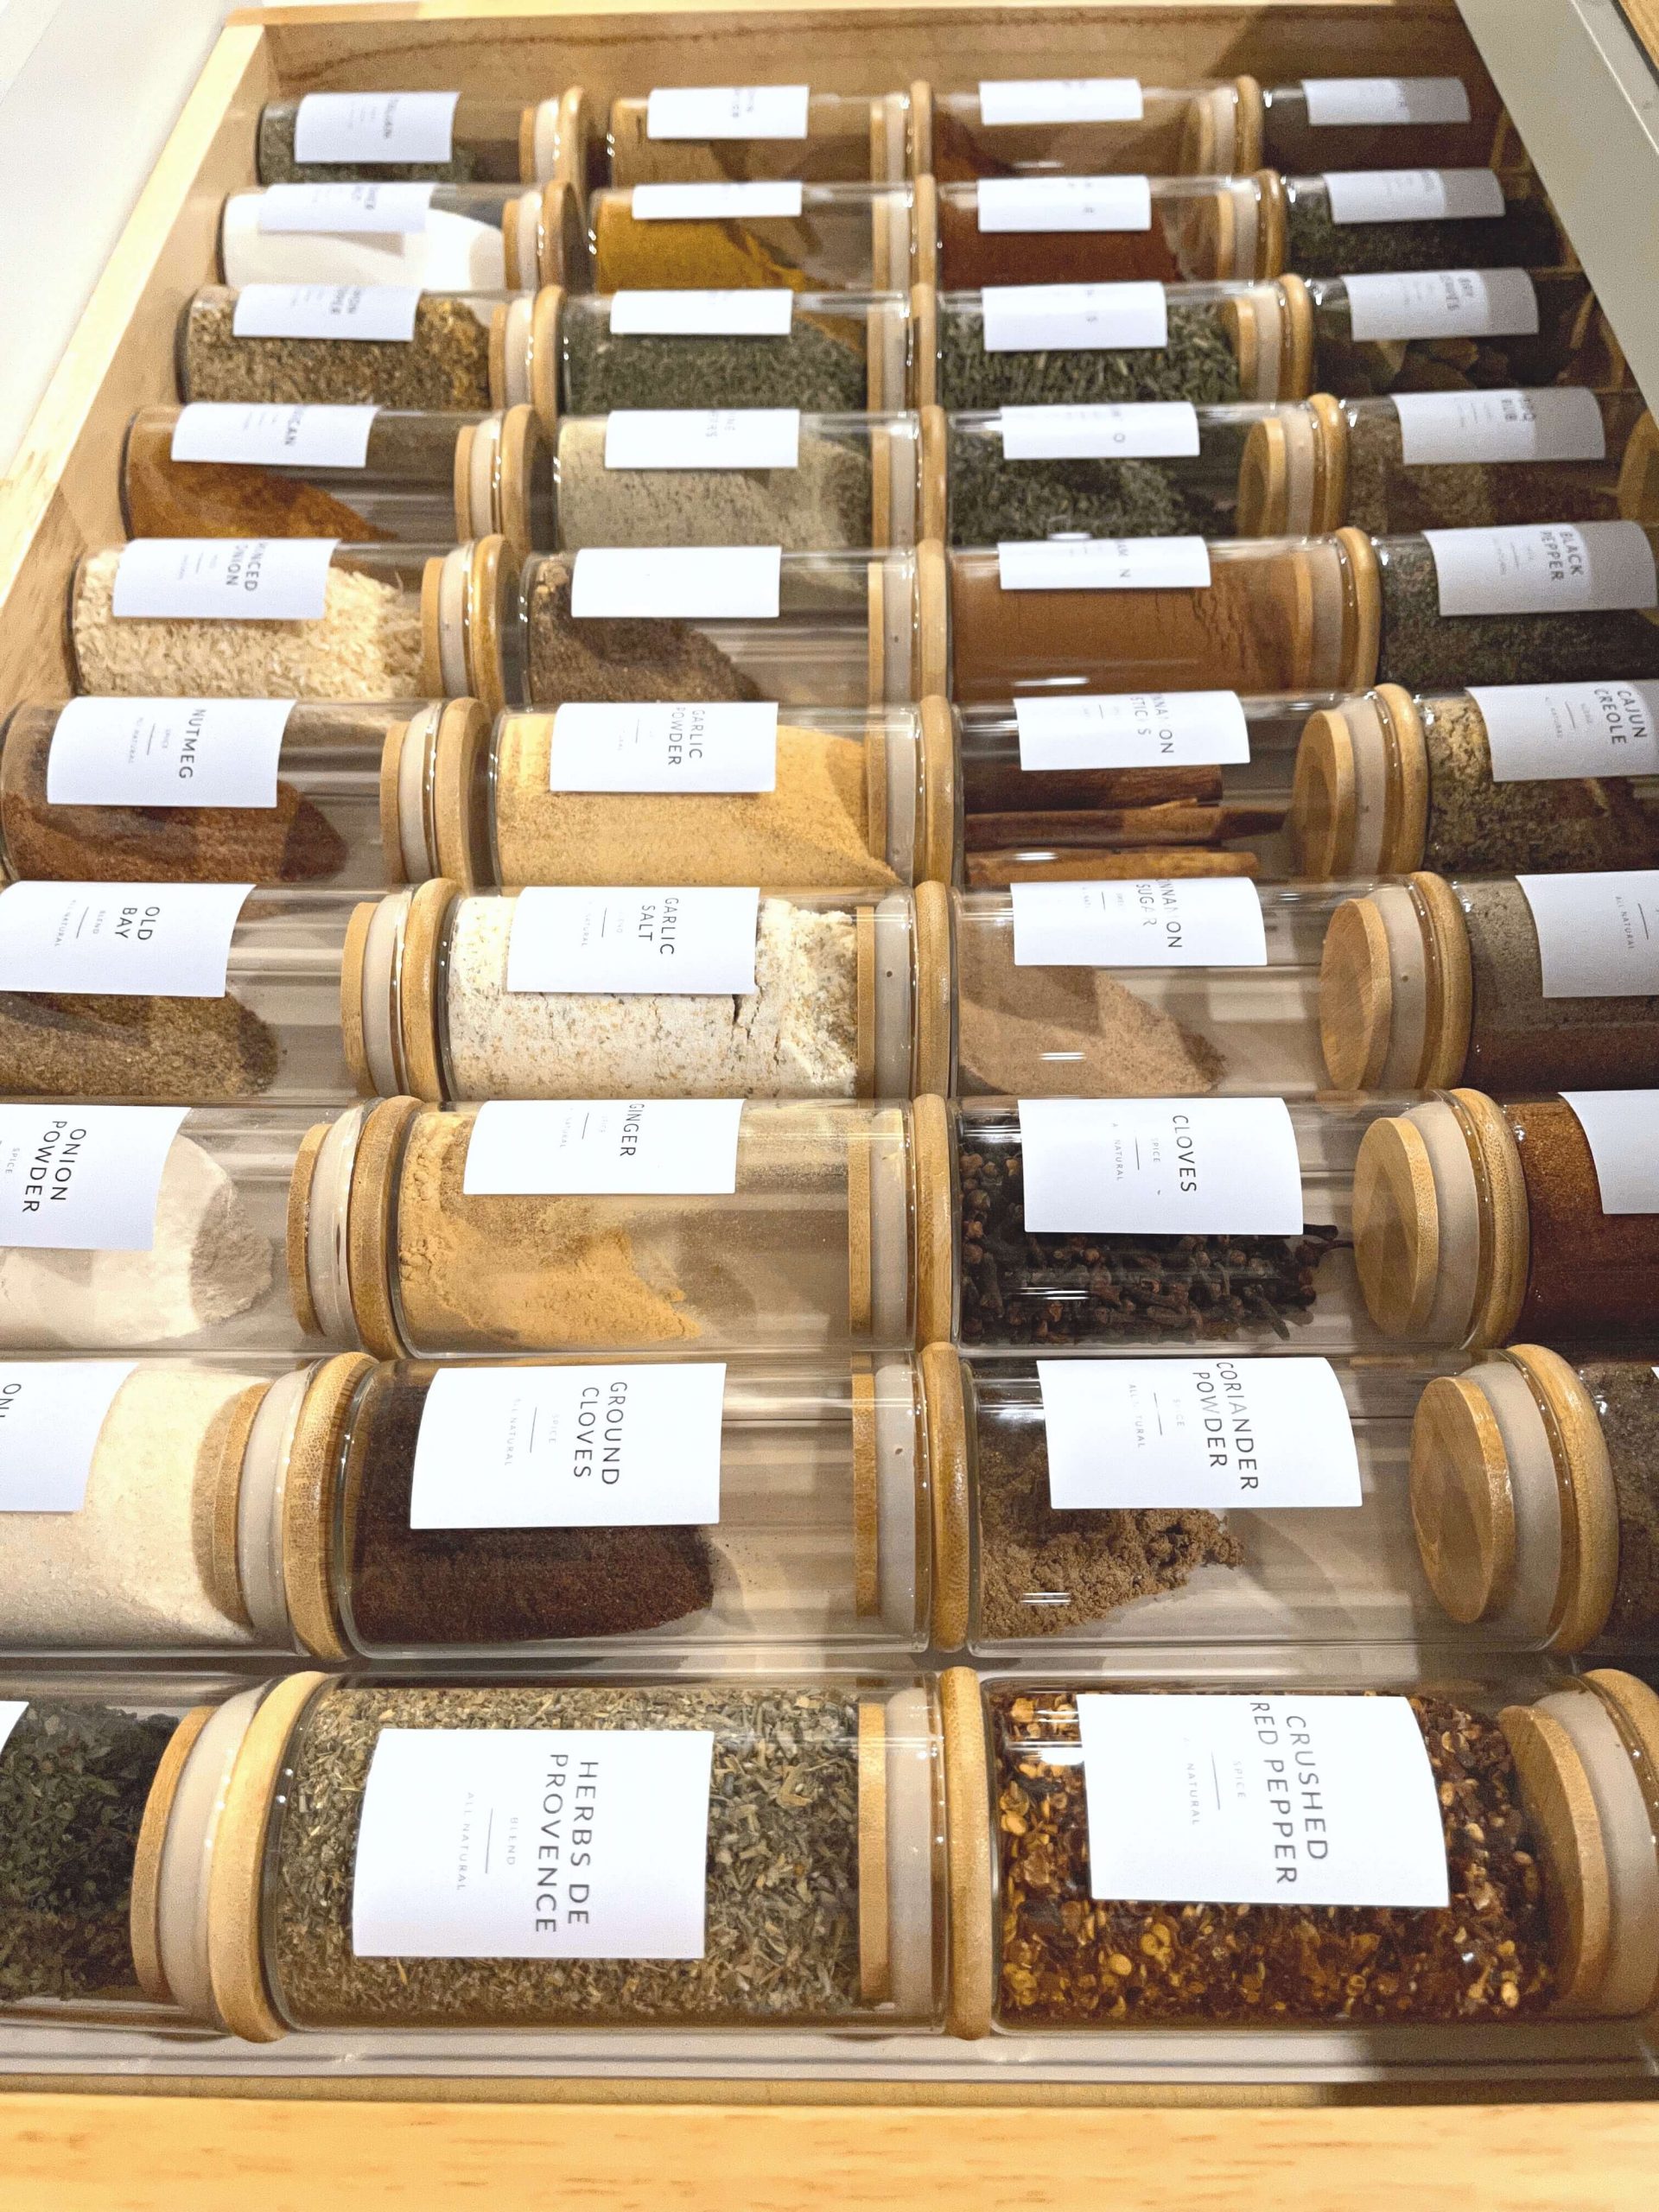 Organized Spice Jars in Kitchen